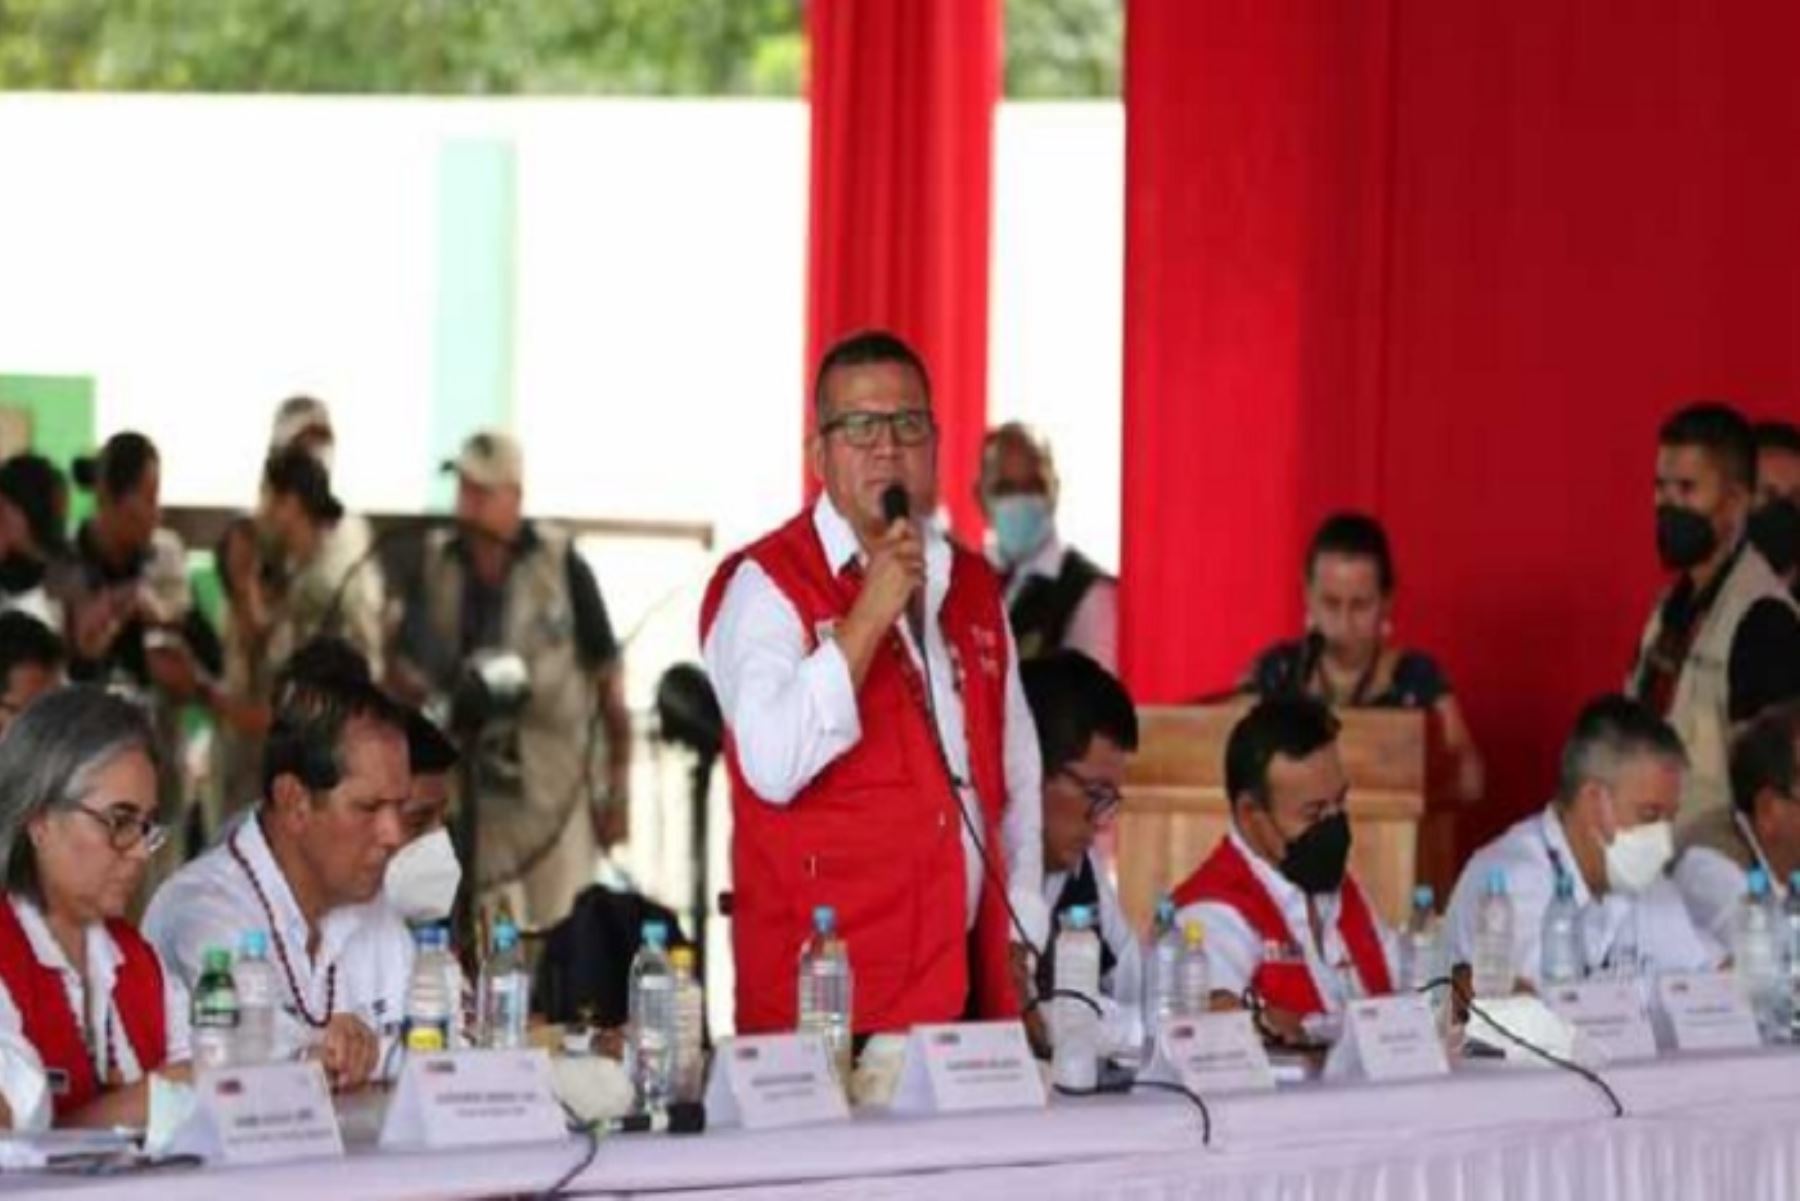 El ministro de Agricultura, Javier Arce Alvarado, también informó que se ha dispuesto que la región Loreto produzca sus semillas, a través del INIA.